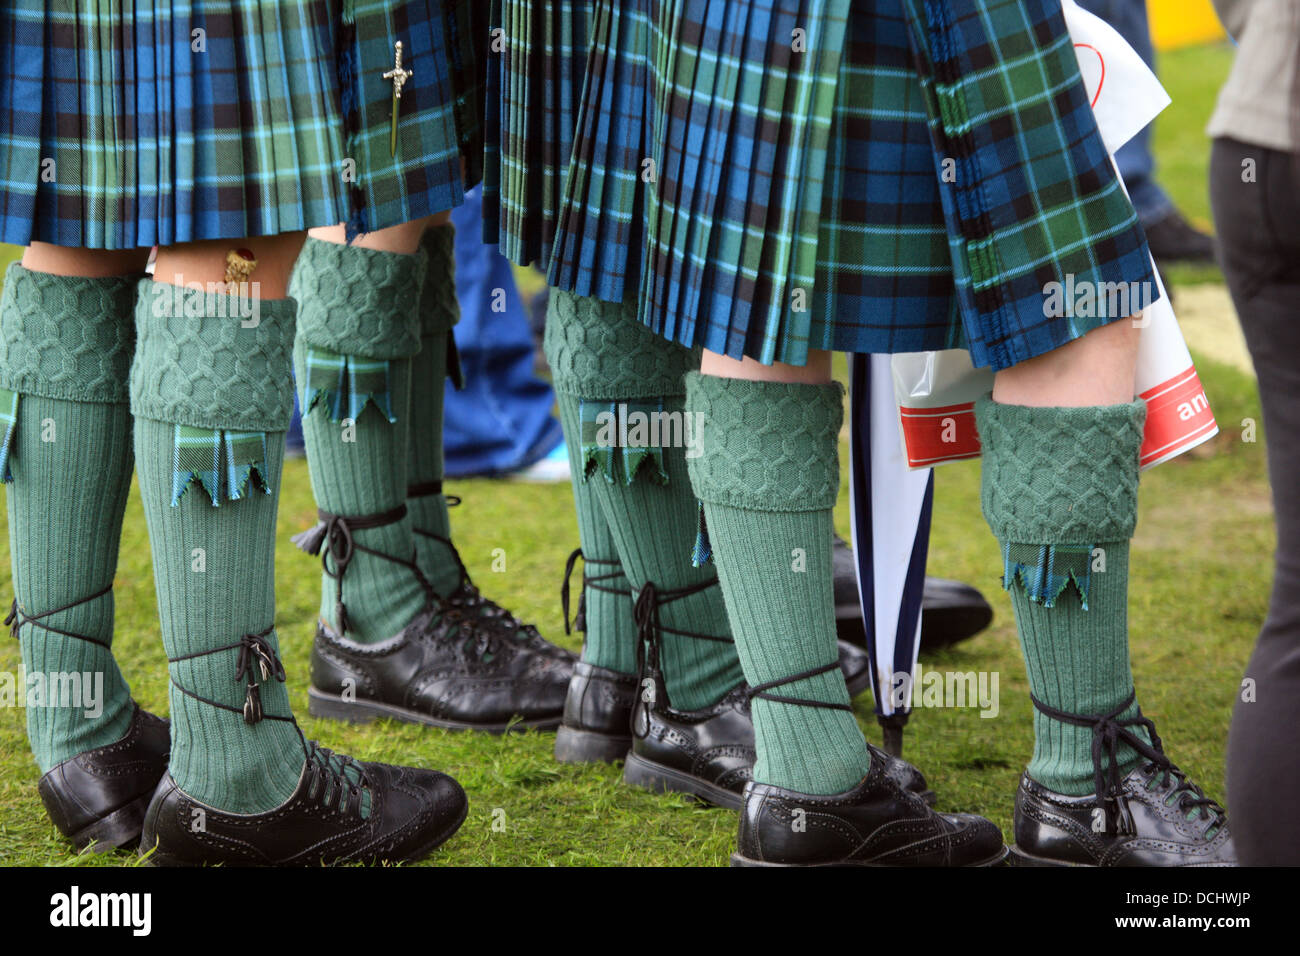 Costume national écossais tartan kilts, highland - chaussures de ville, des chaussettes avec clignote lors du Championnat de Pipe Band à Glasgow Banque D'Images